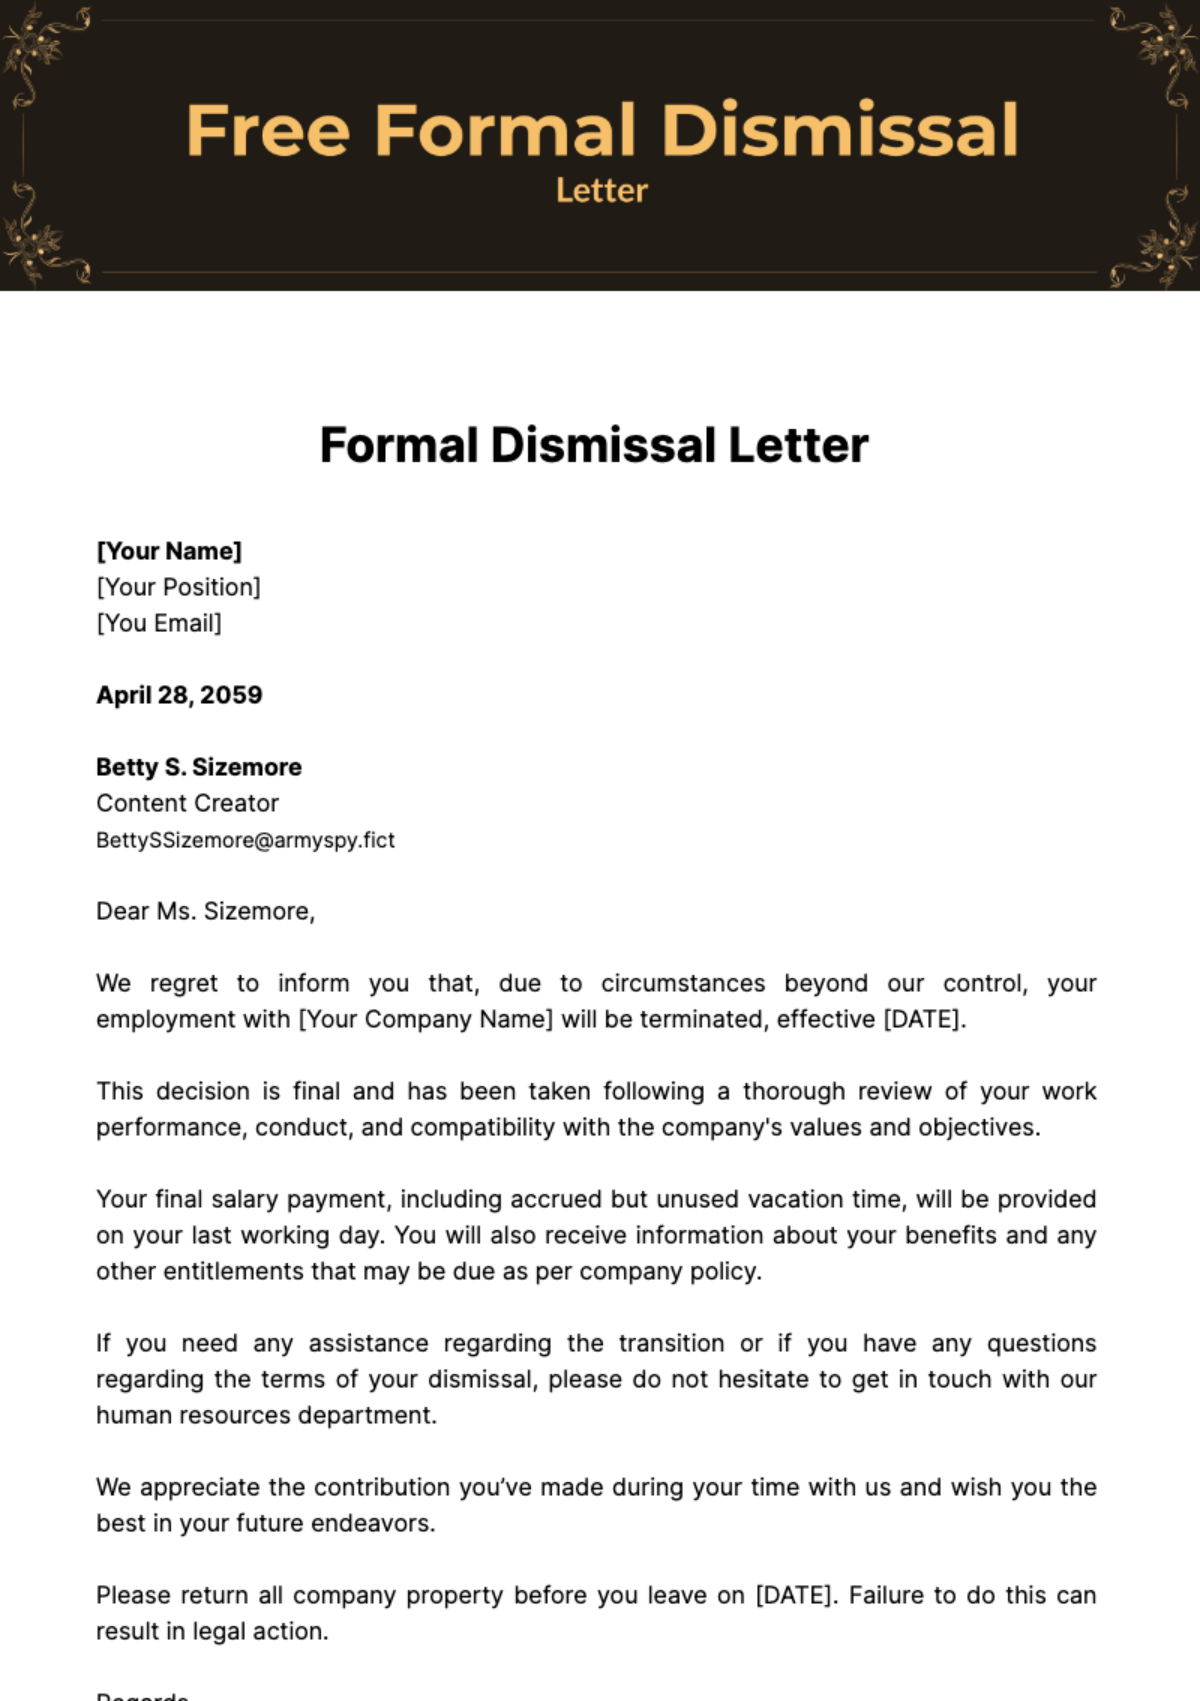 Free Formal Dismissal Letter Template